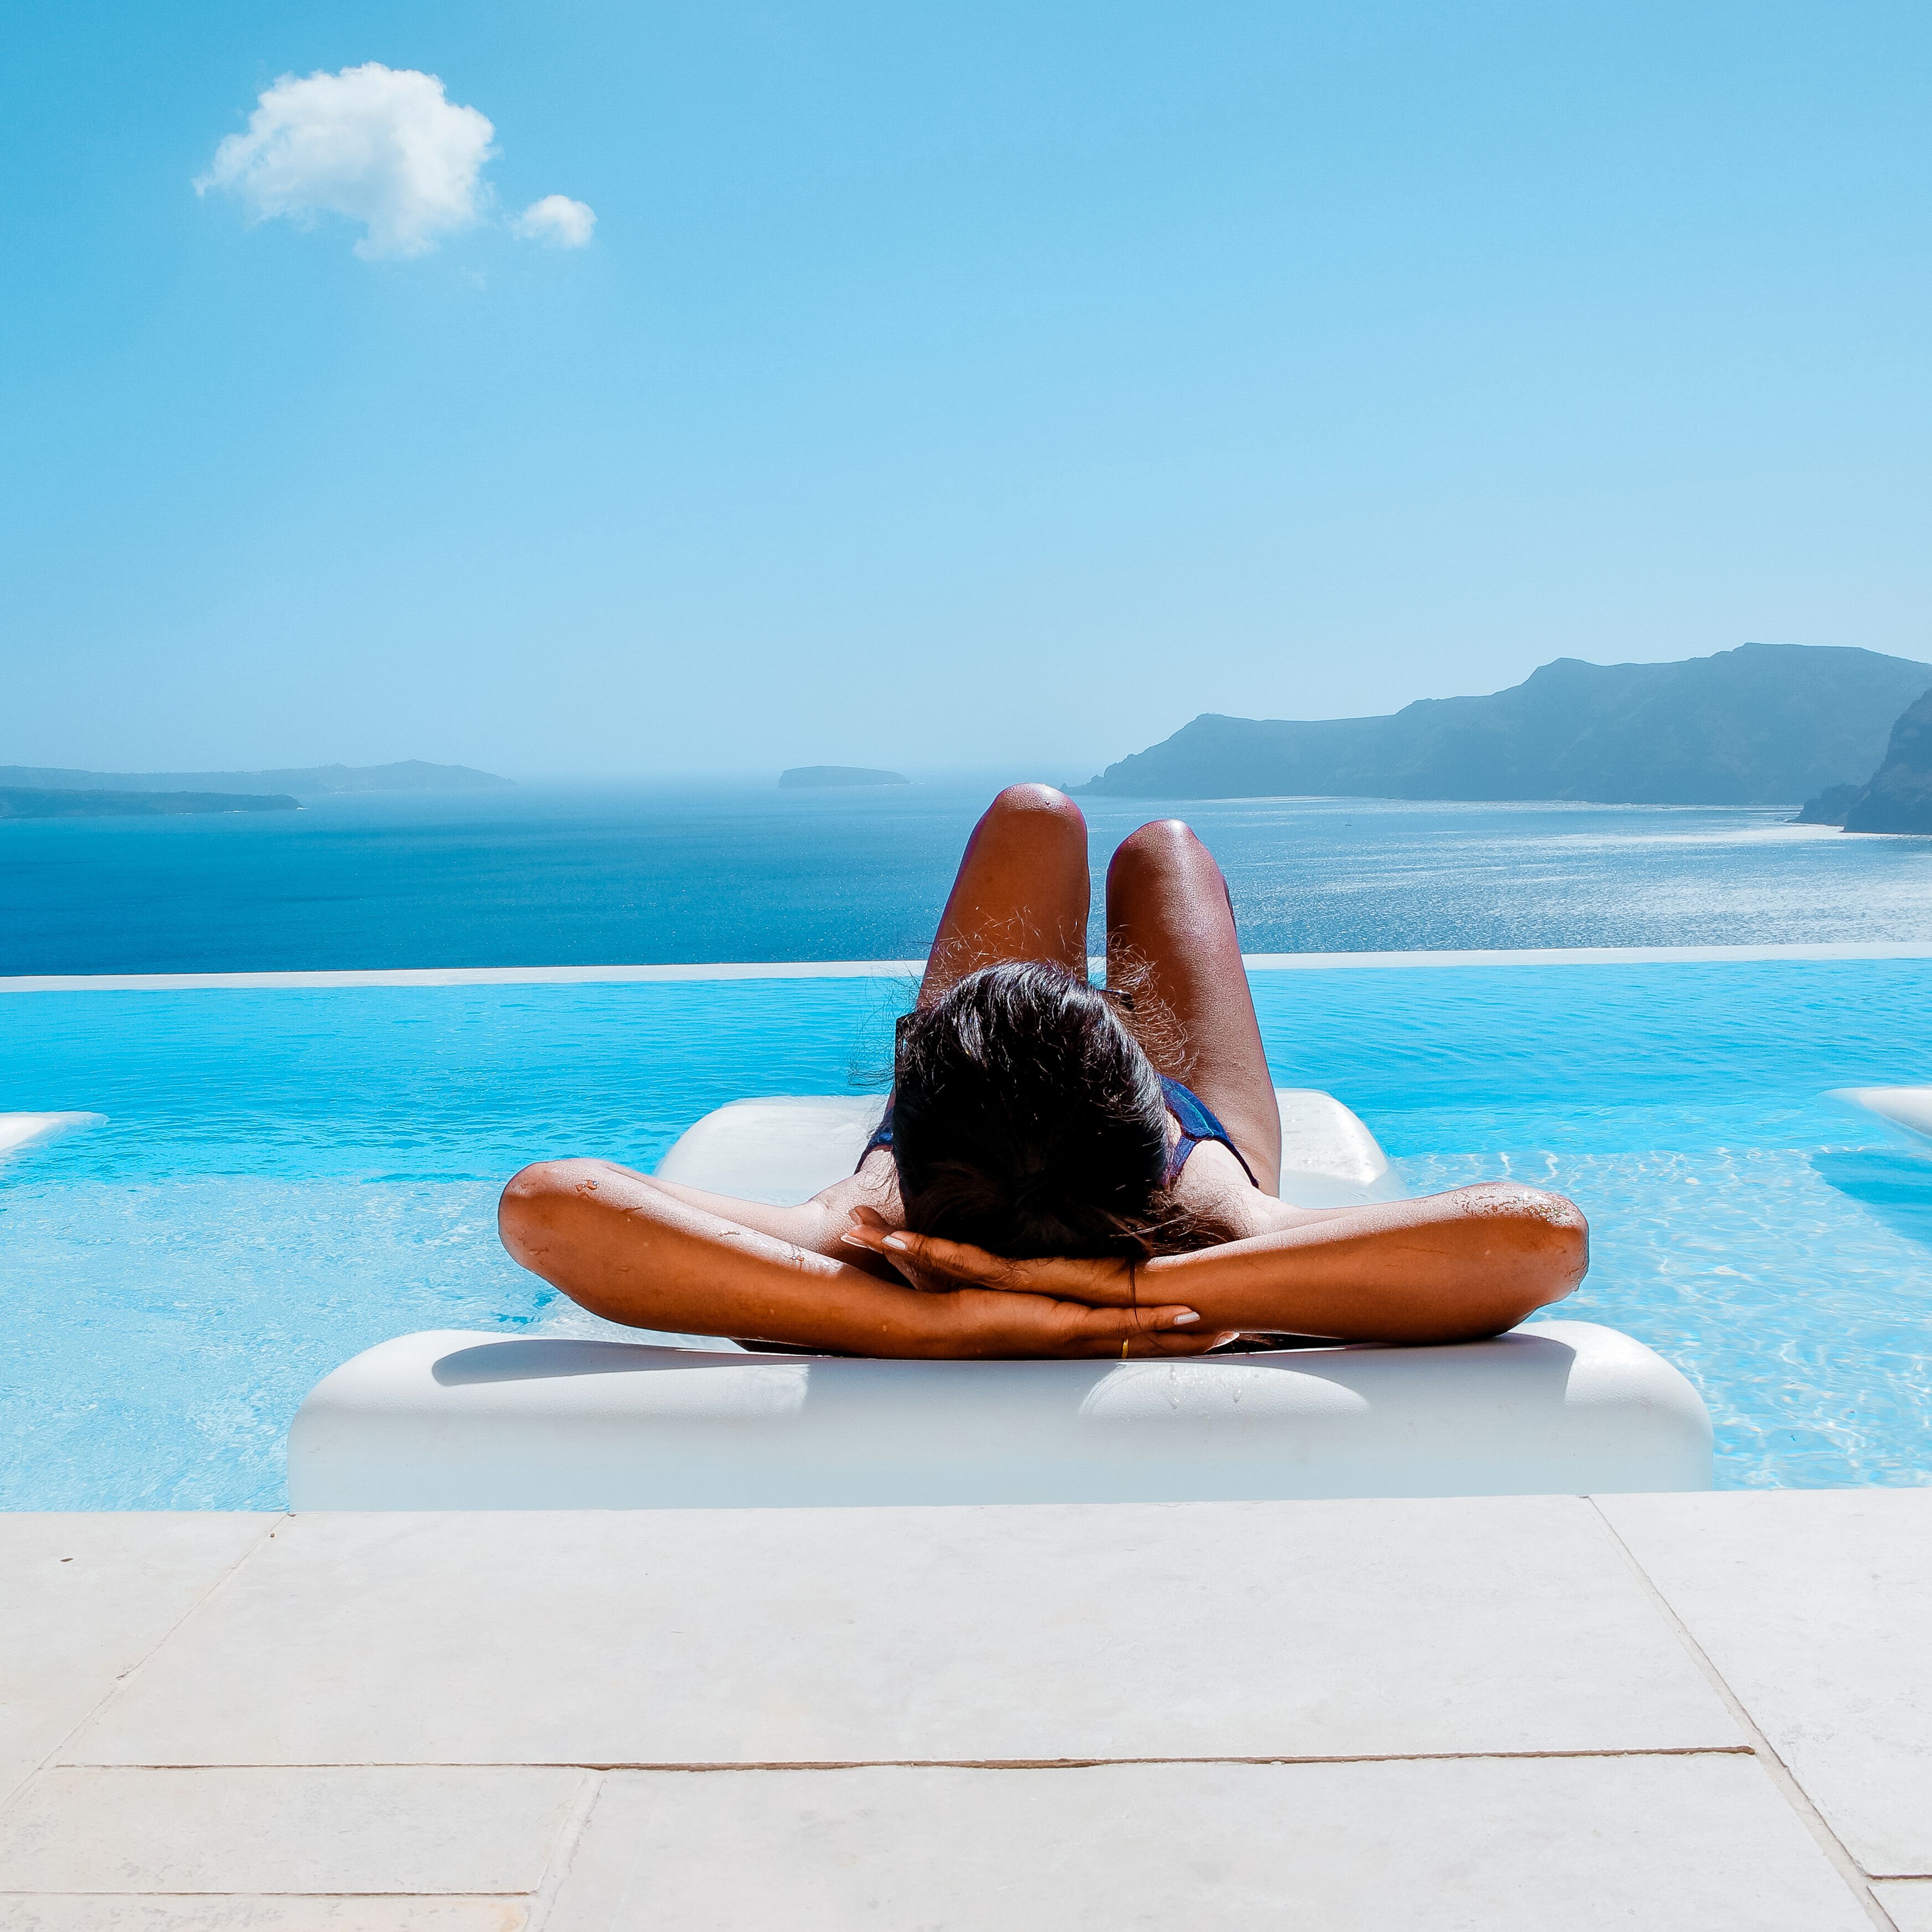 Frau liegt auf einer Luftmatratze im Pool und genießt den Blick auf das Meer